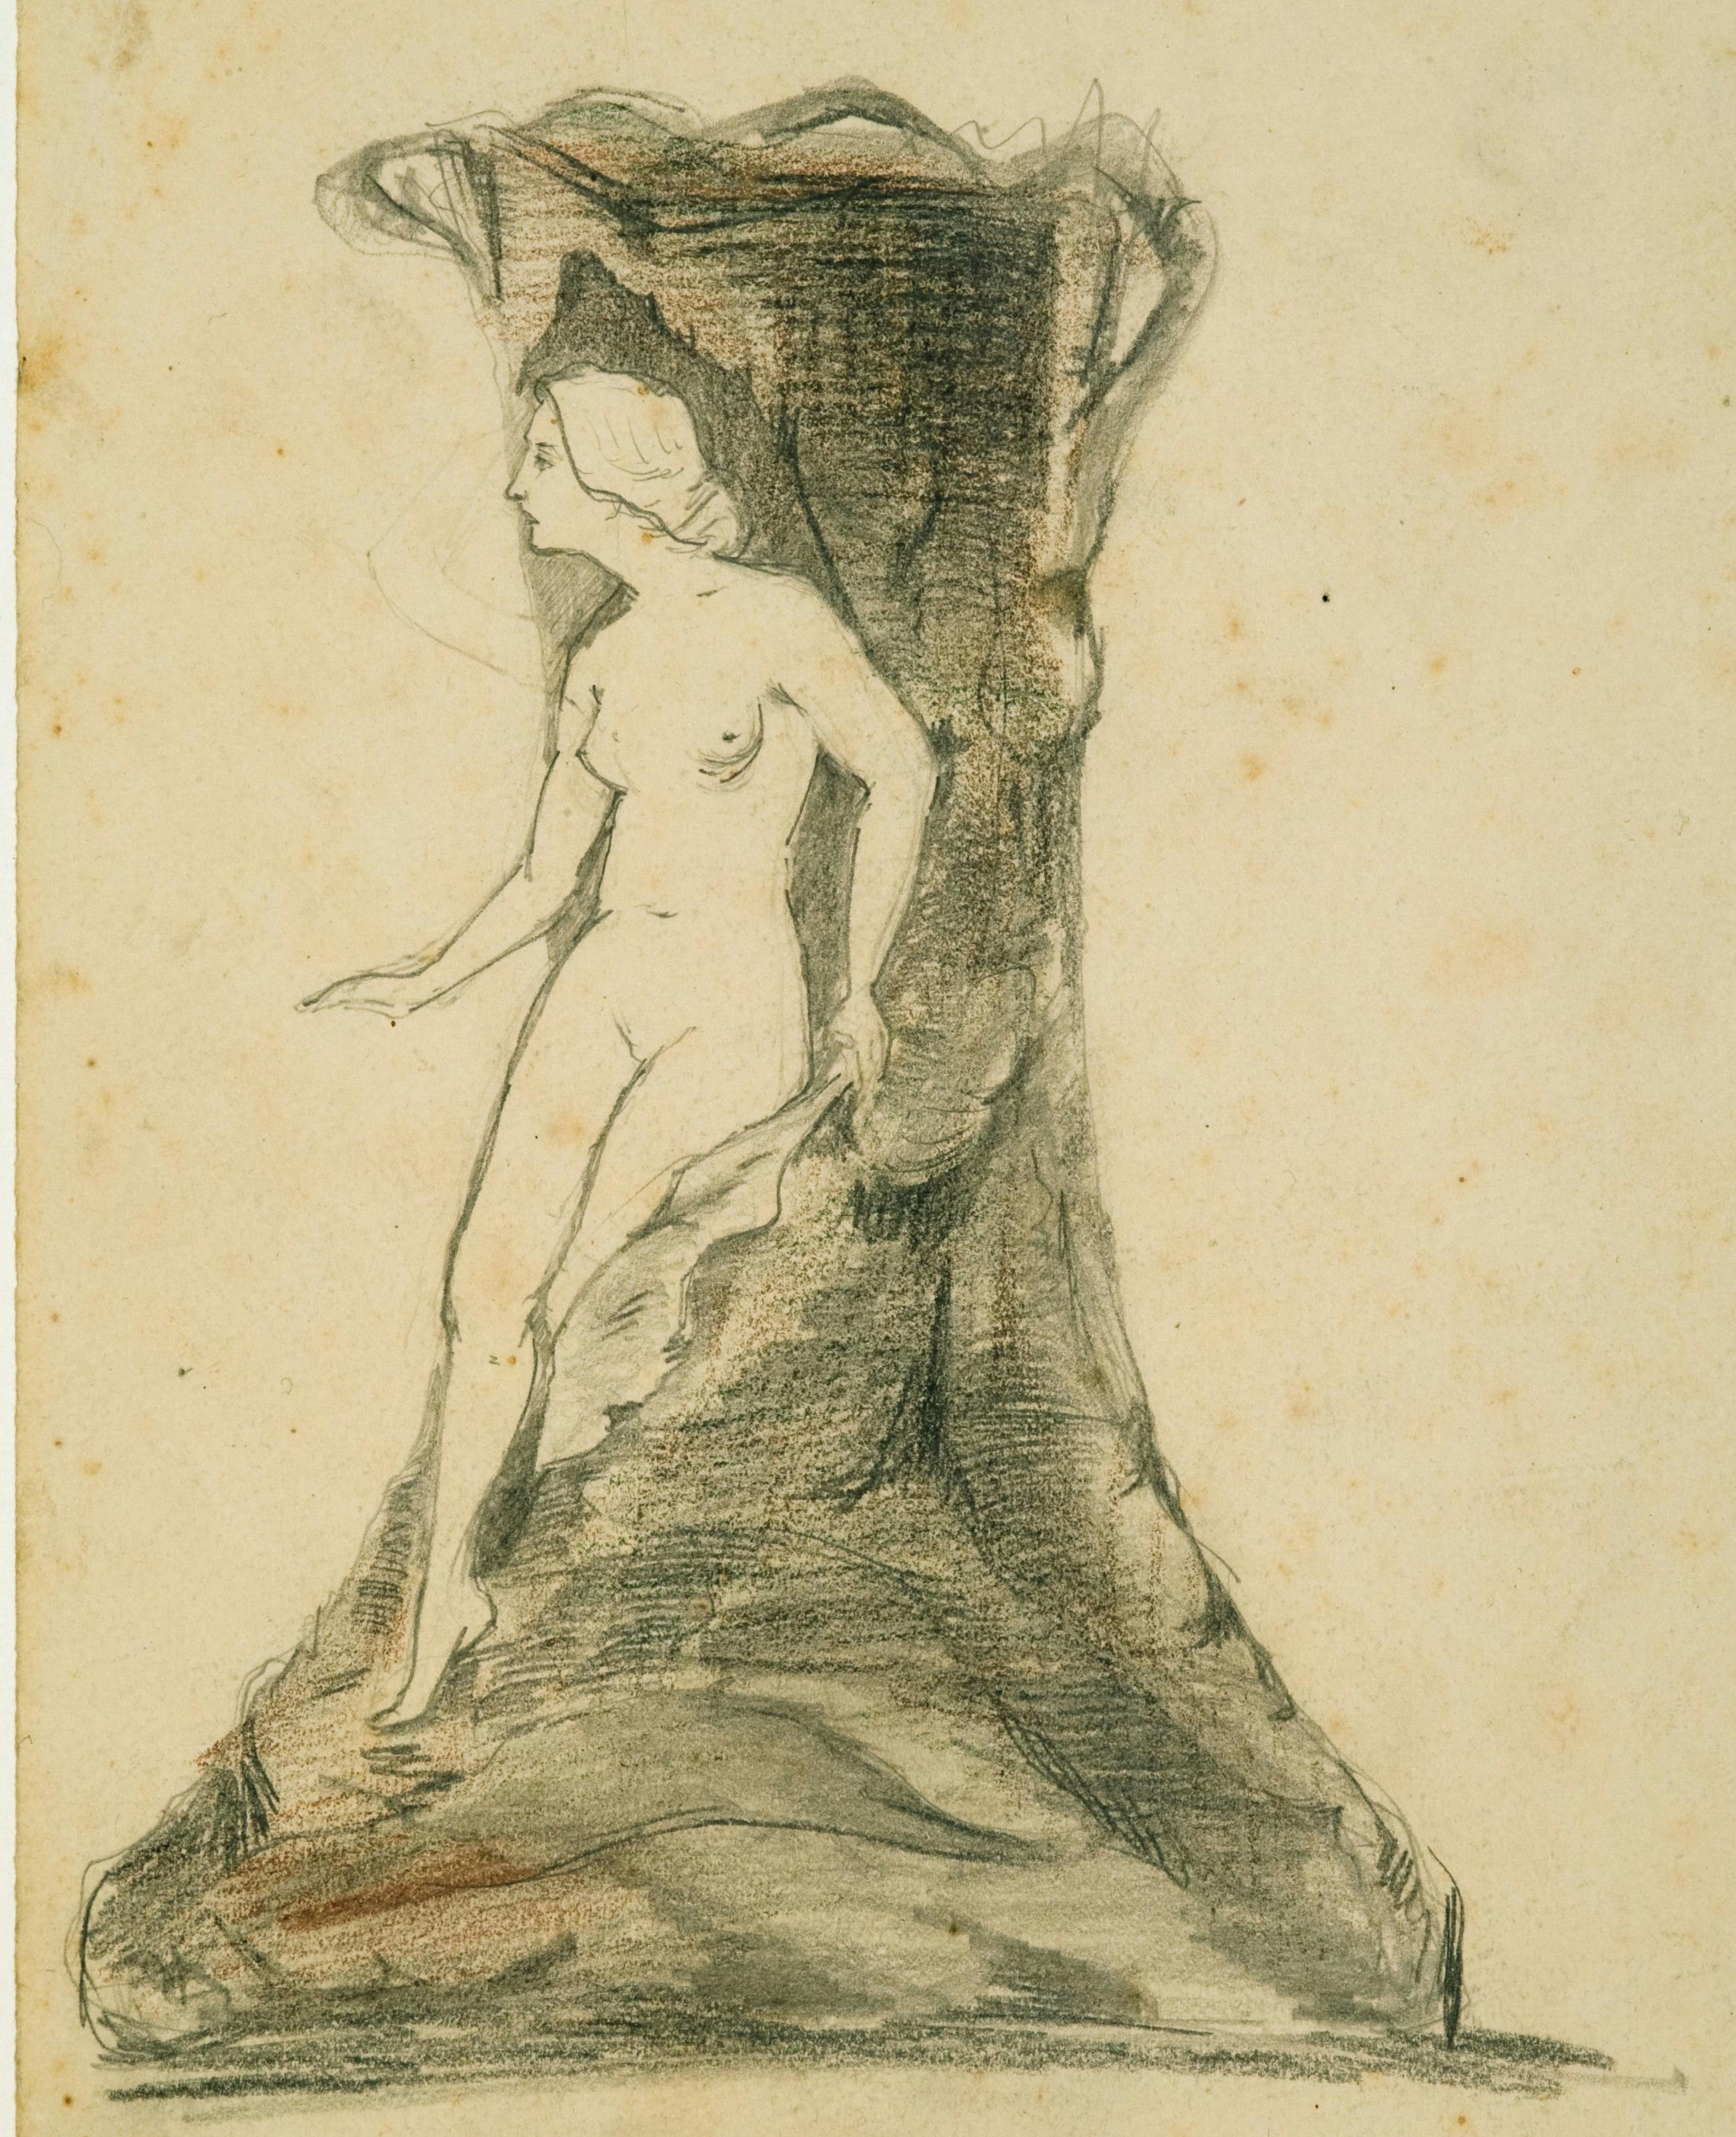 Disegno a matita con una figura femminile nuda che esce da un tronco di albero